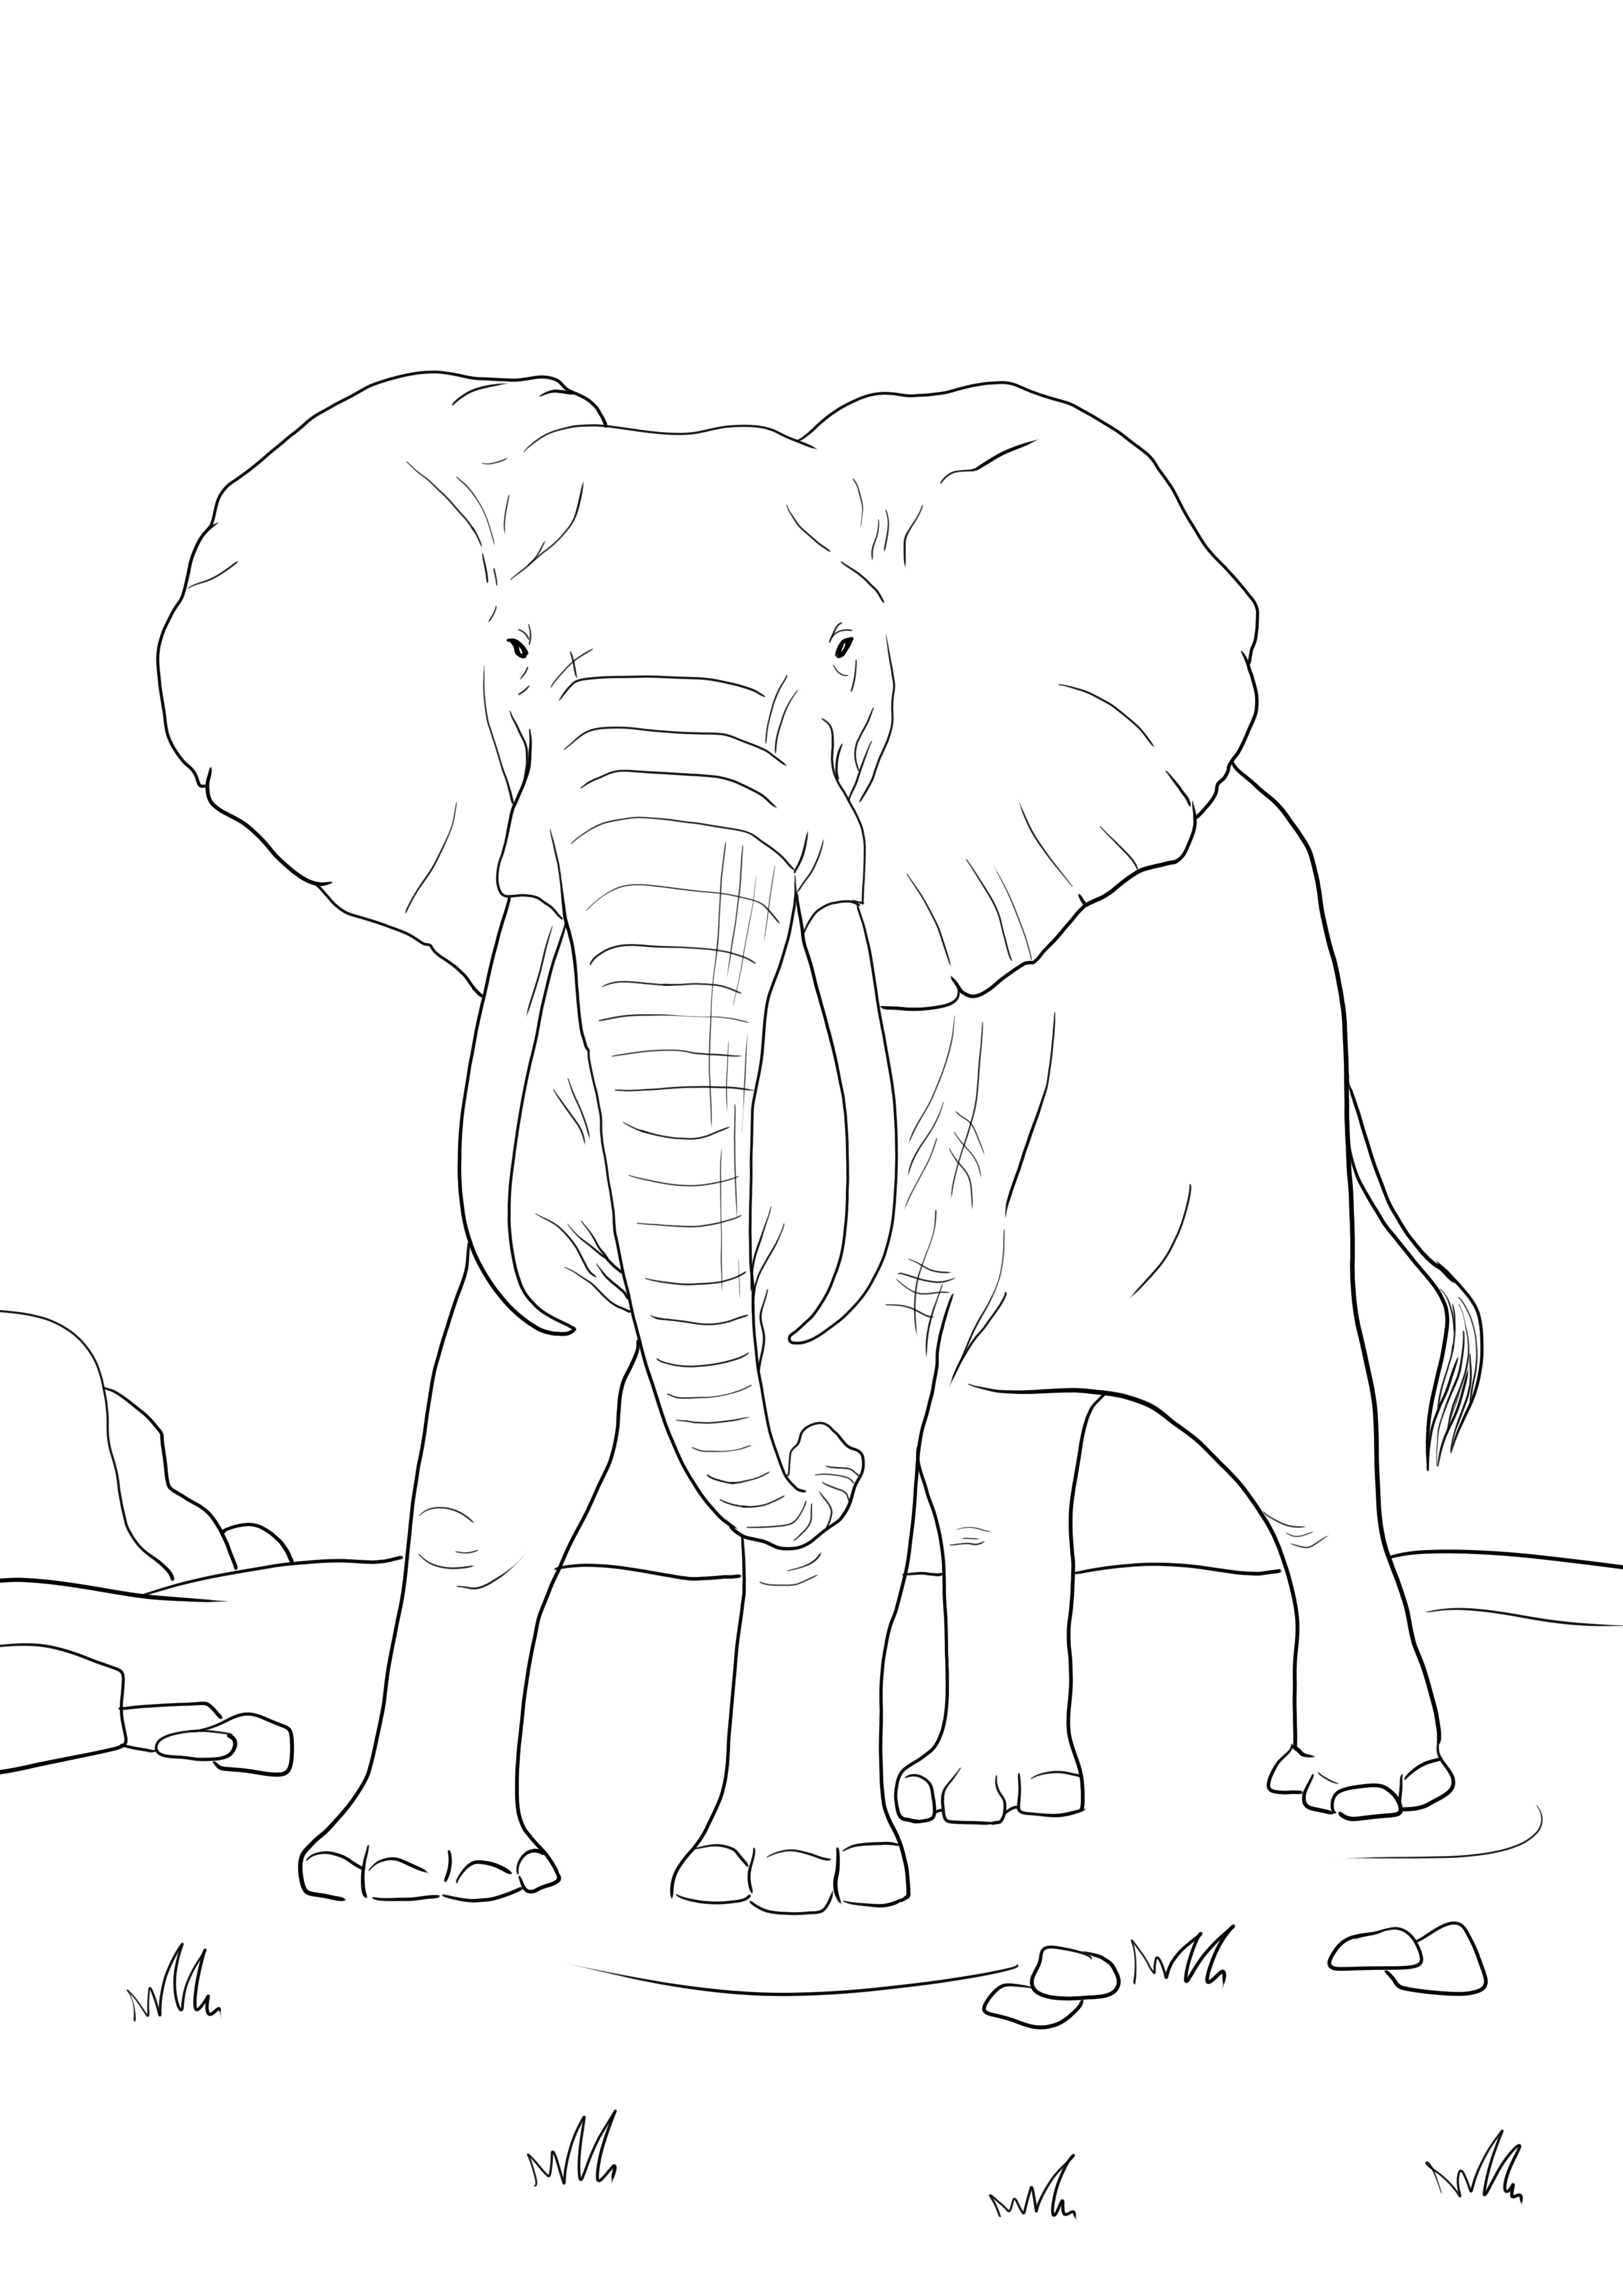 İndirmek veya doğrudan yazdırmak için ücretsiz bir Afrika fili basit bir boyama sayfası